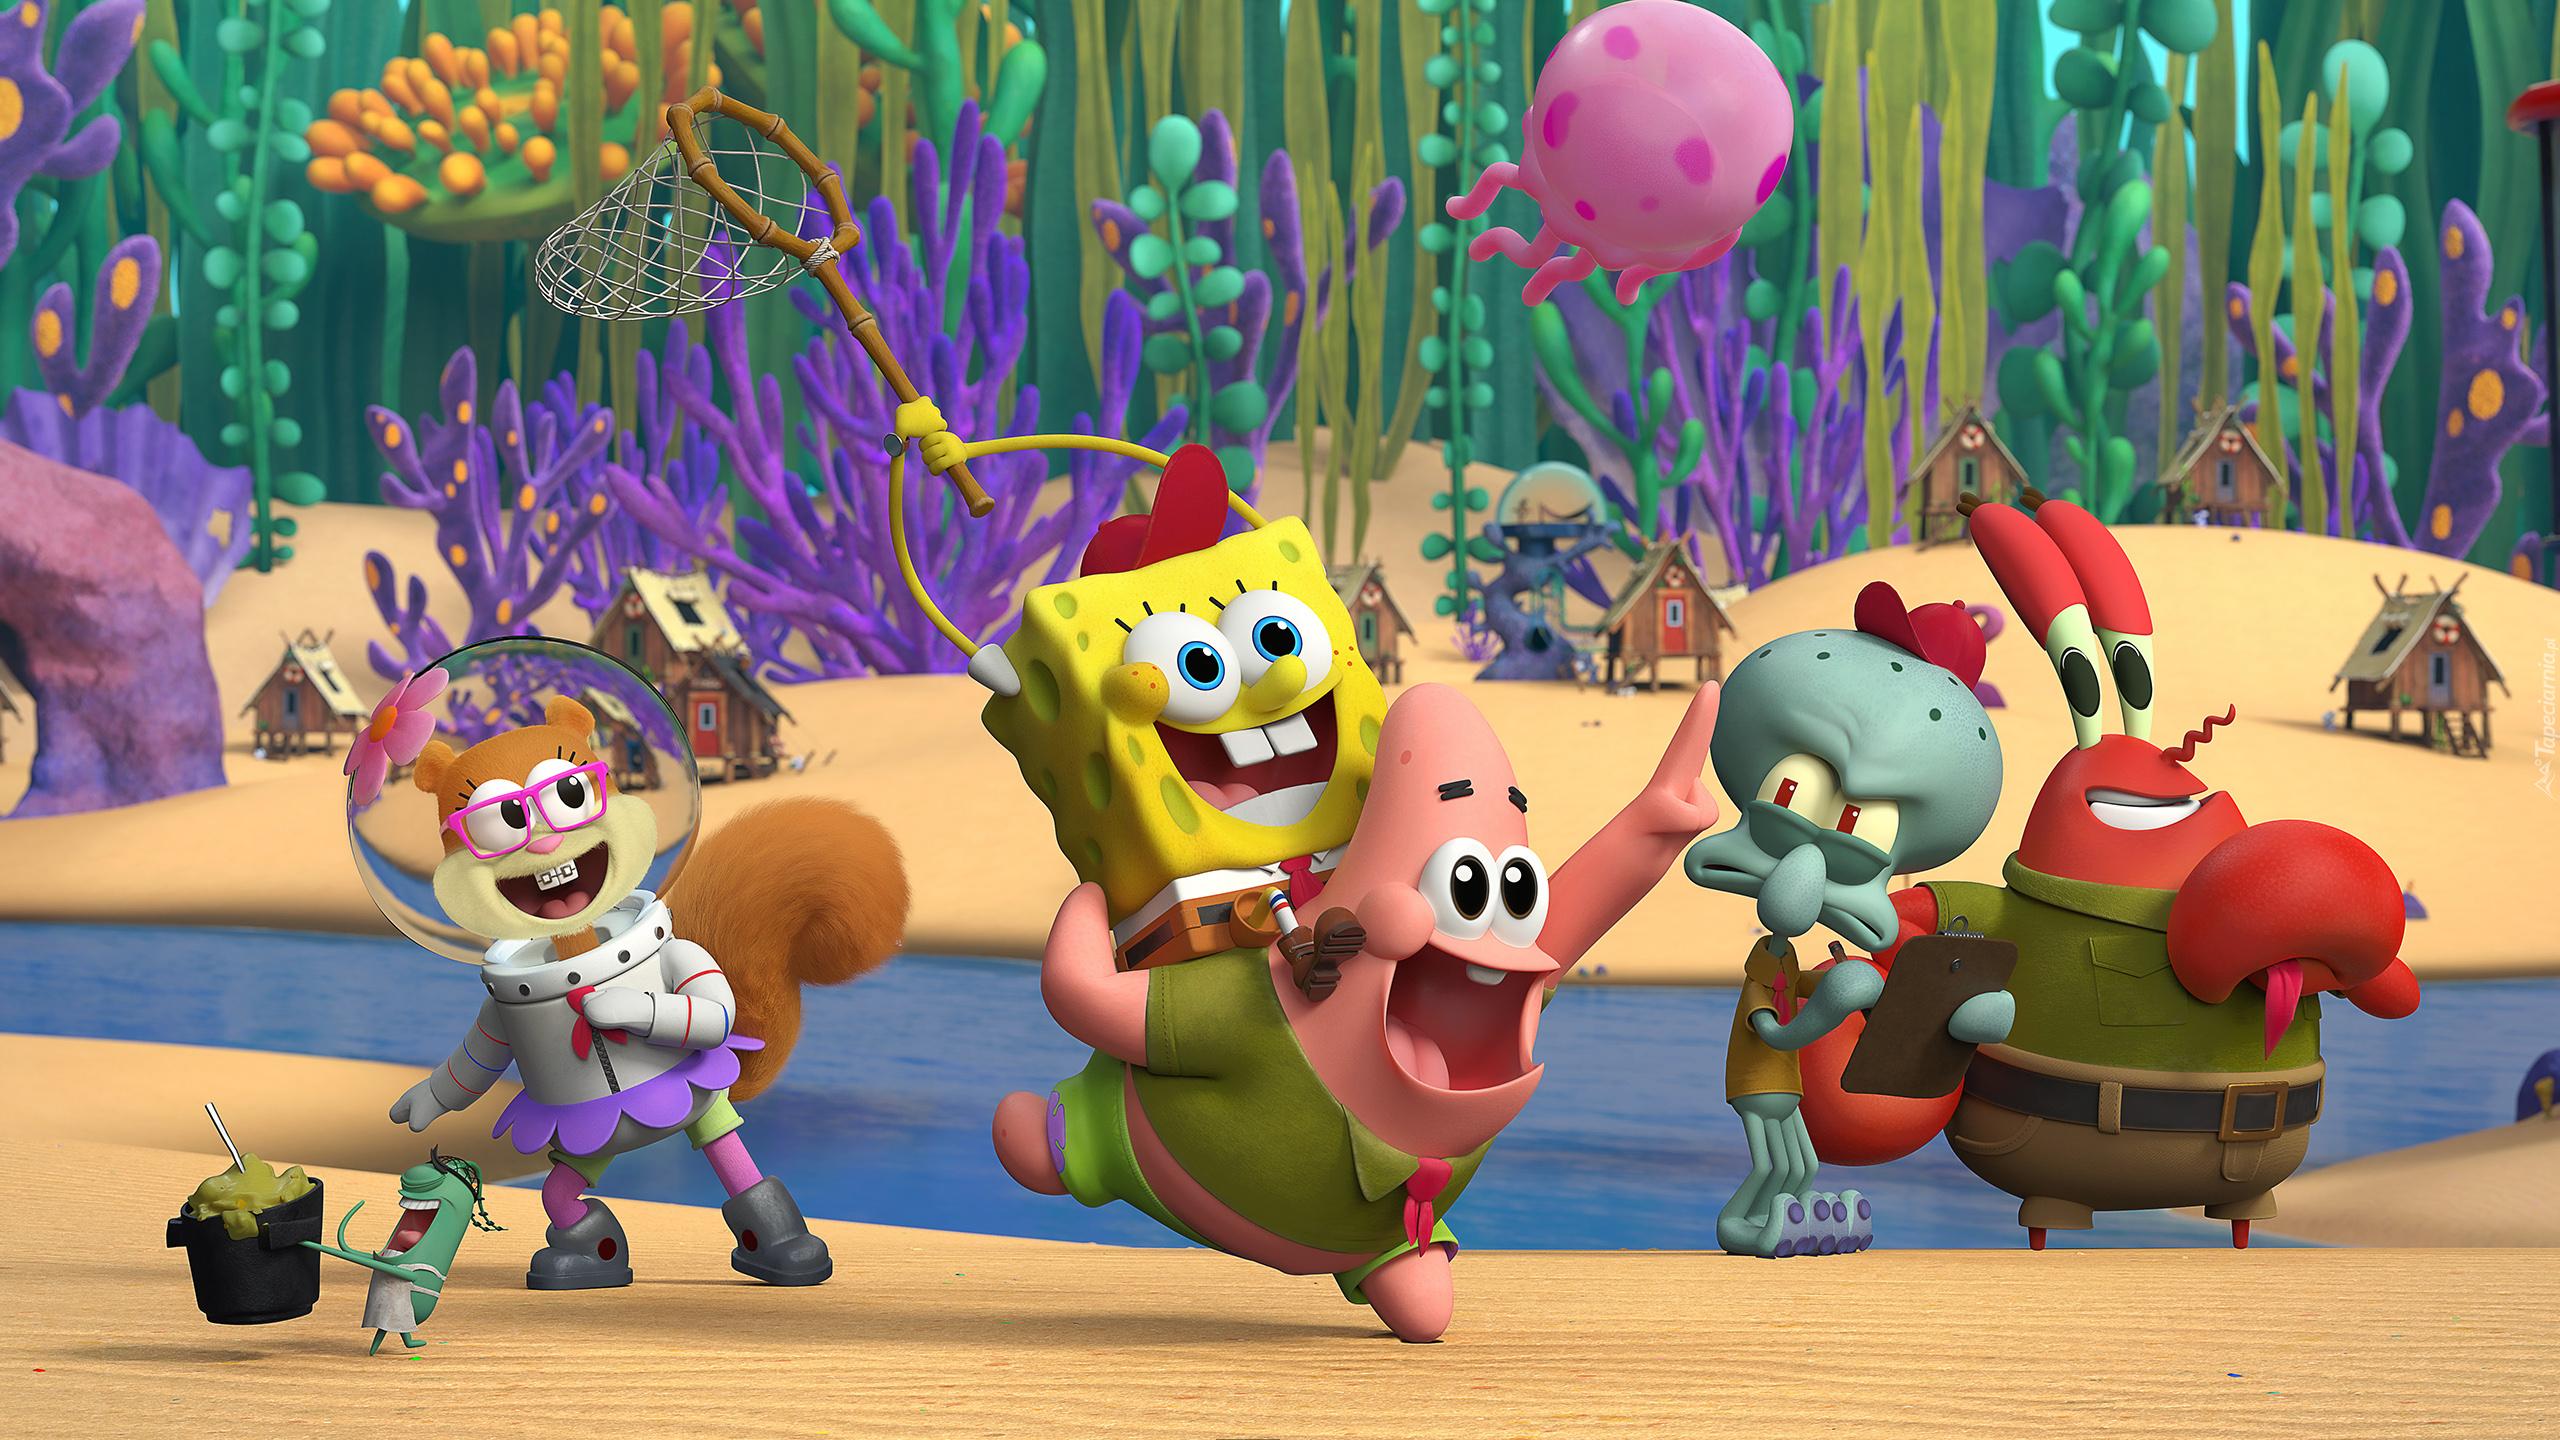 Serial animowany, SpongeBob, Kanciastoporty, Kamp Koral Spongebobs Under Years, Obóz, Koralowce, Plaża, Domki, Bohaterowie